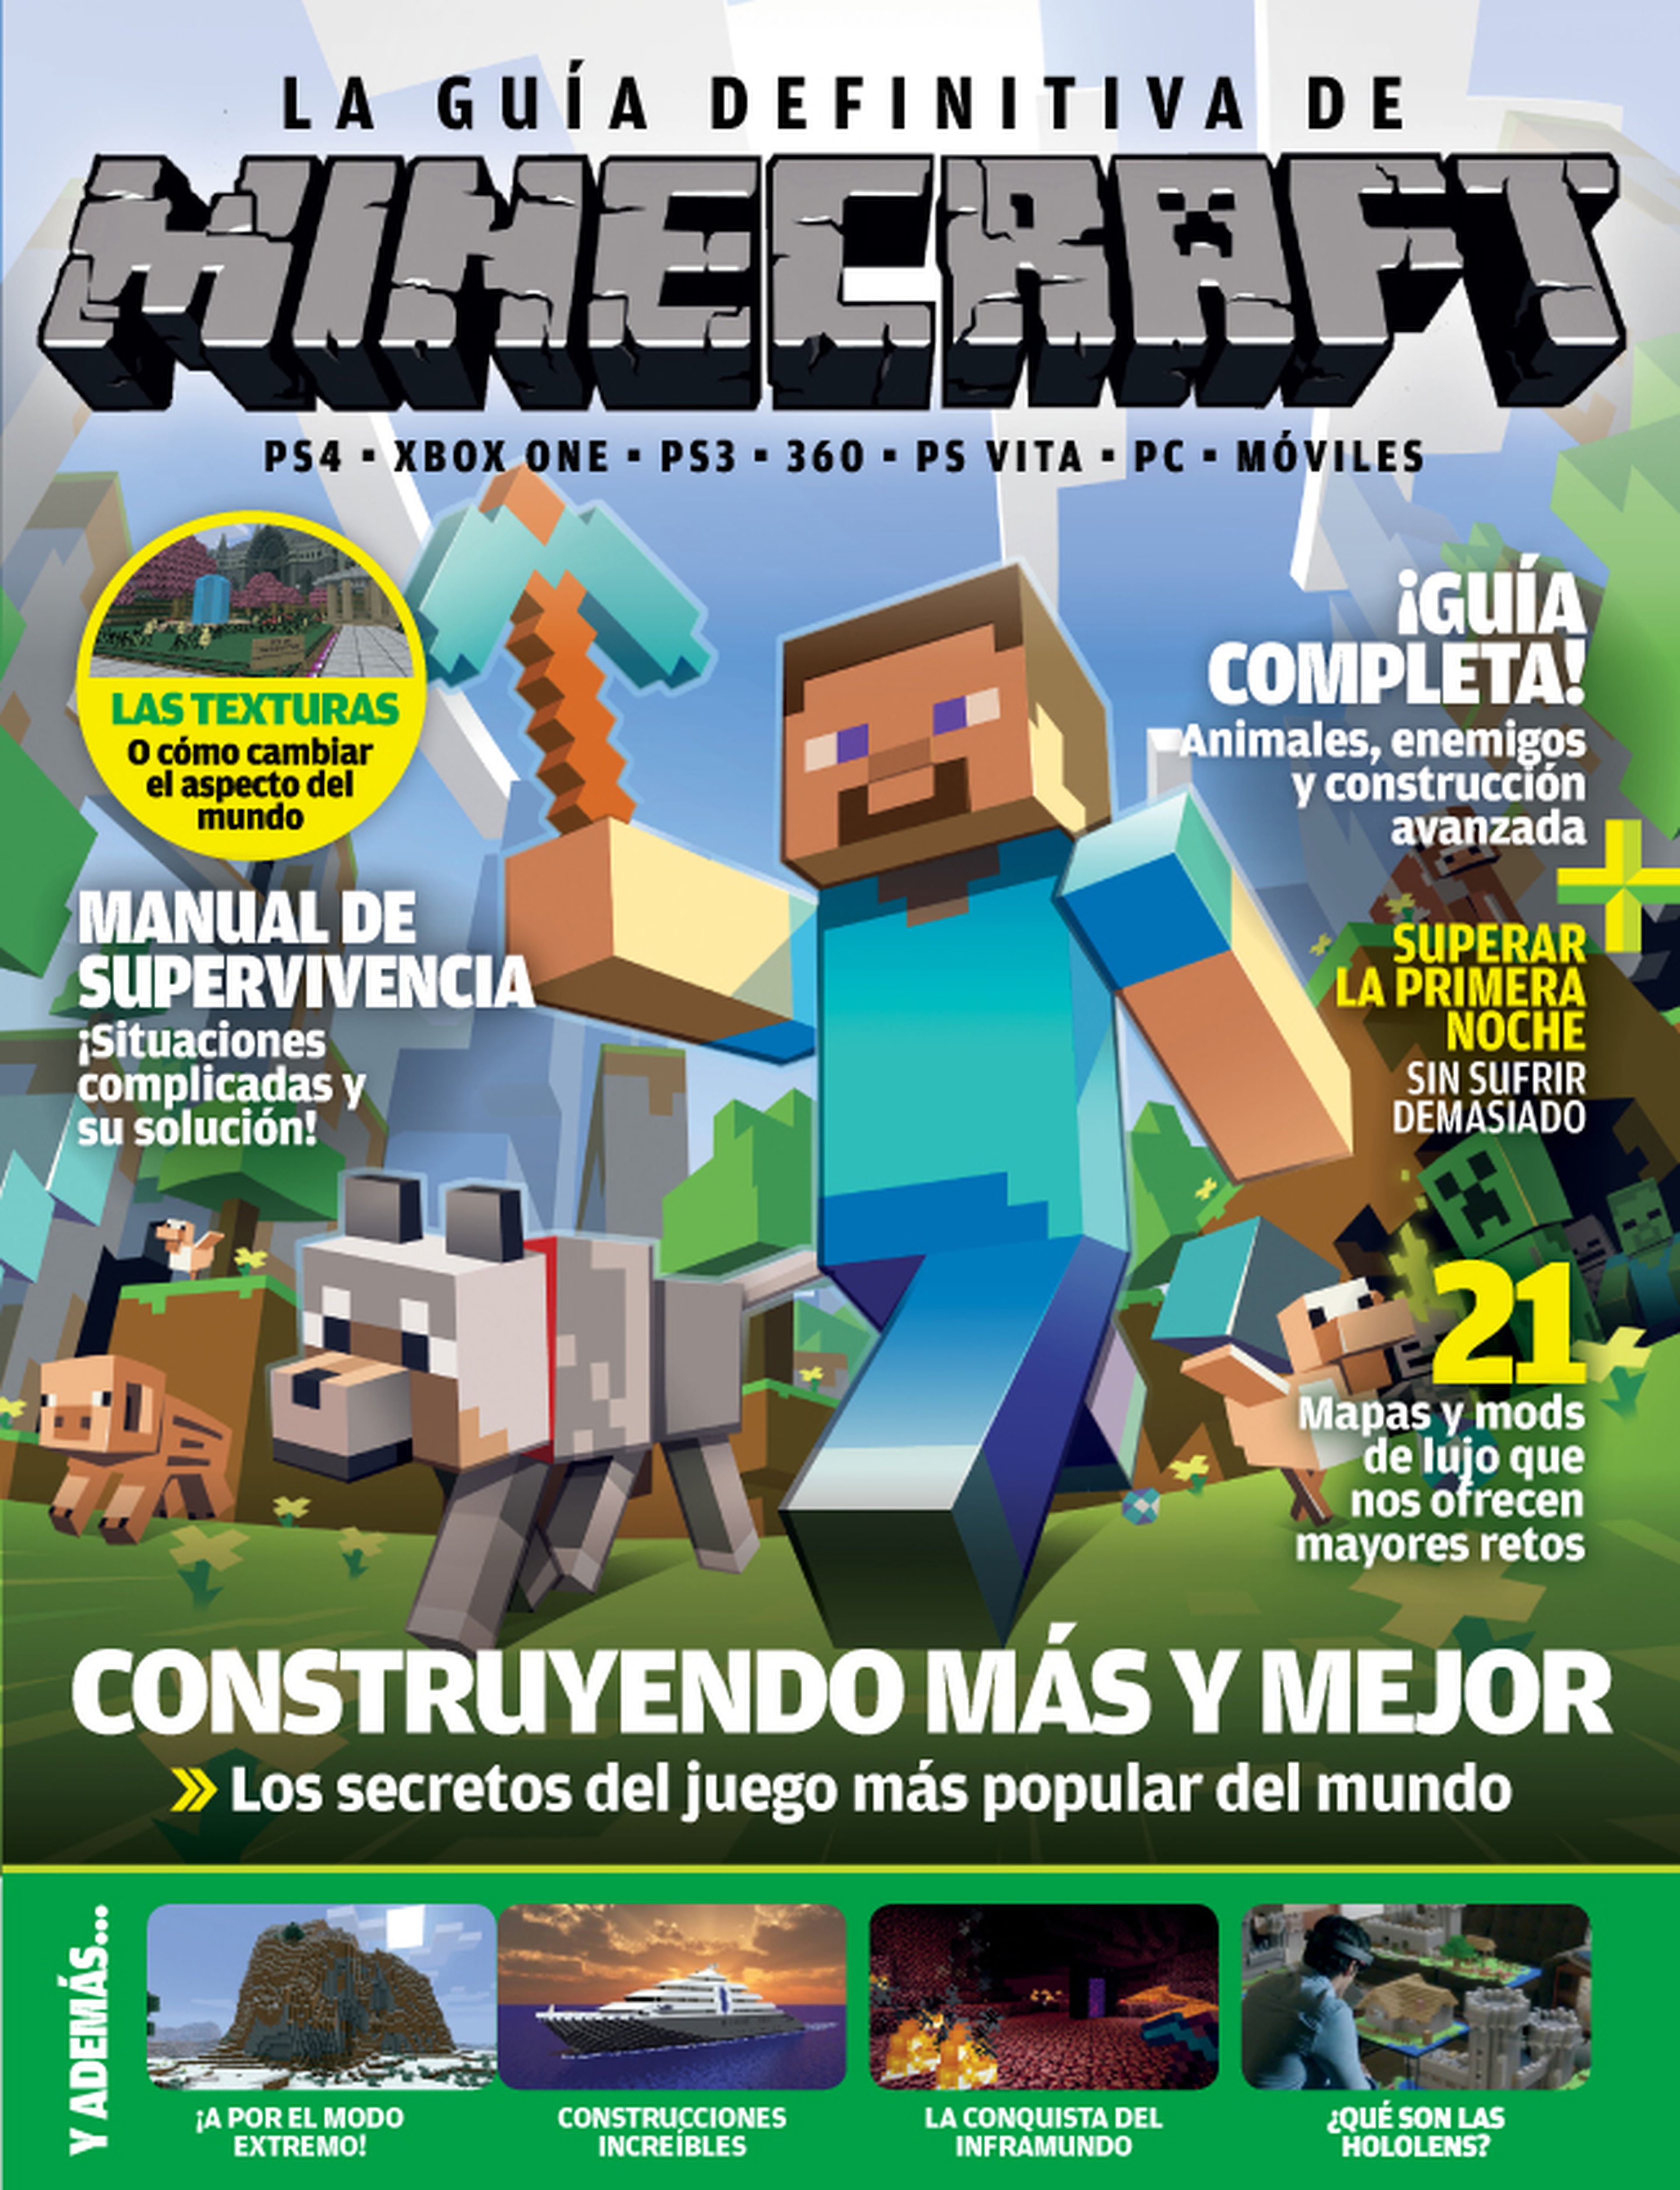 ¡La guía definitiva de Minecraft ya está a la venta!